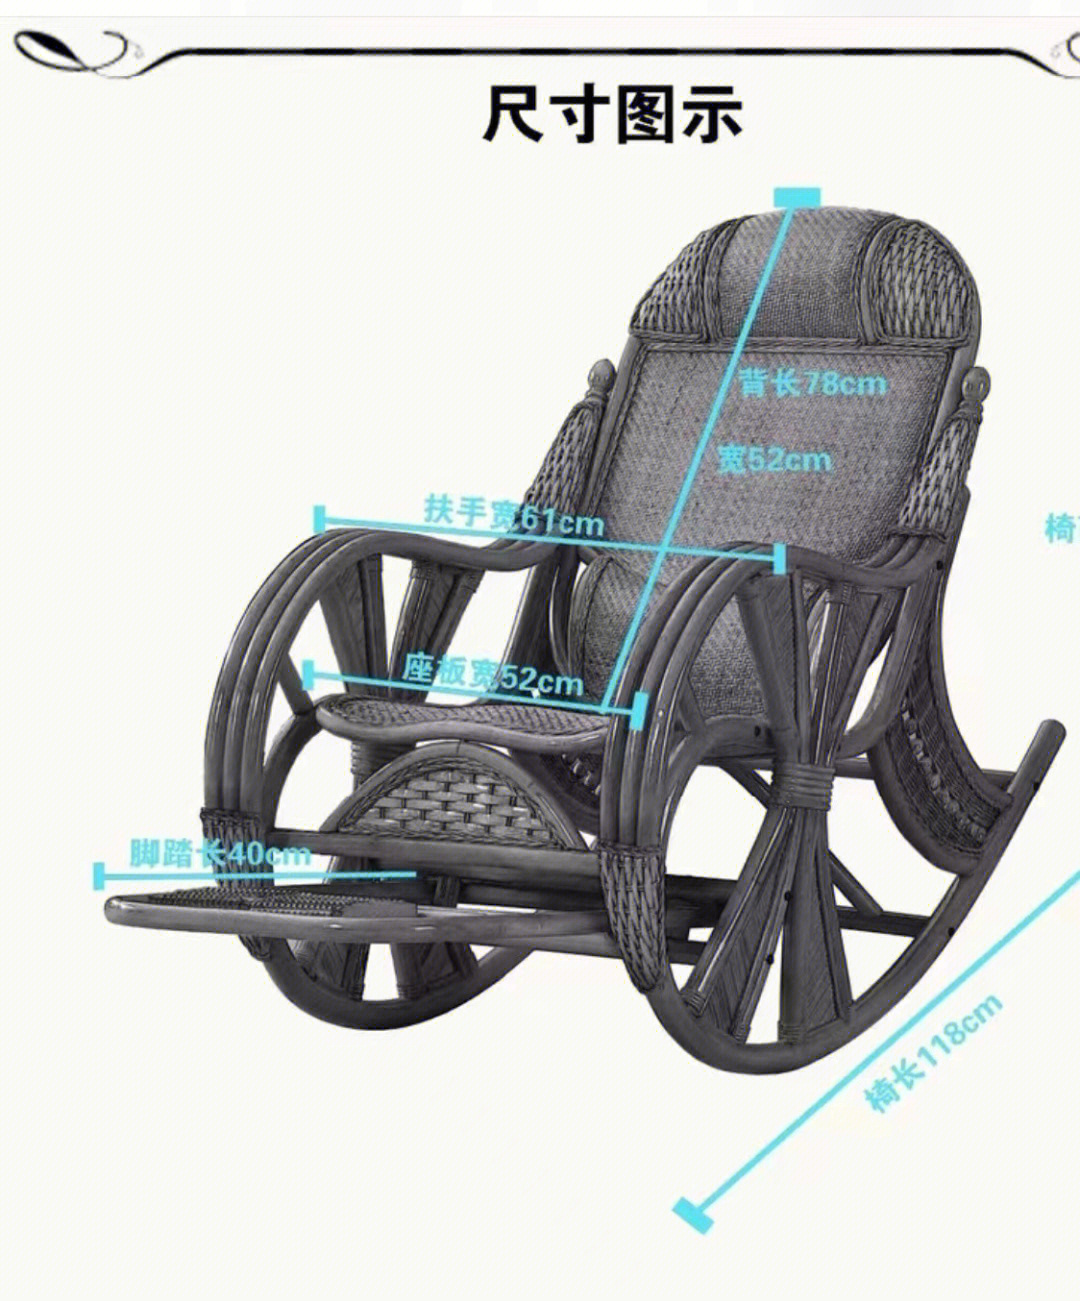 纯手工编织藤椅,都是坐板内宽52厘米,有需要联系,价格美丽